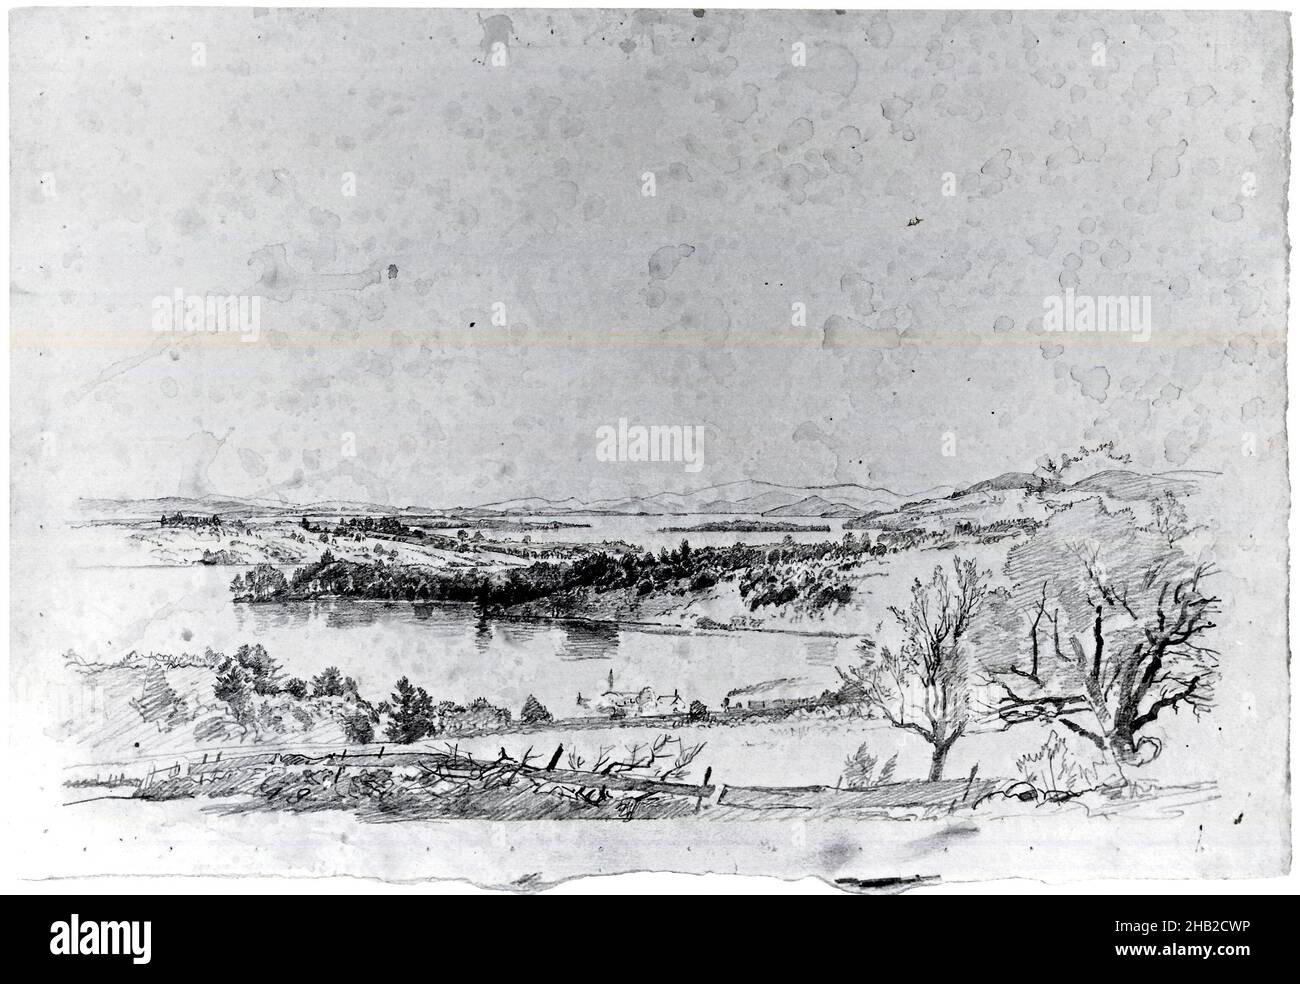 Paesaggio con treno, William Trost Richards, americano, 1833-1905, grafite e gocce di acquerello su carta, n.d., foglio, leggermente irregolare: 10 5/16 x 14 15/16 in., 26,2 x 37,9 cm Foto Stock